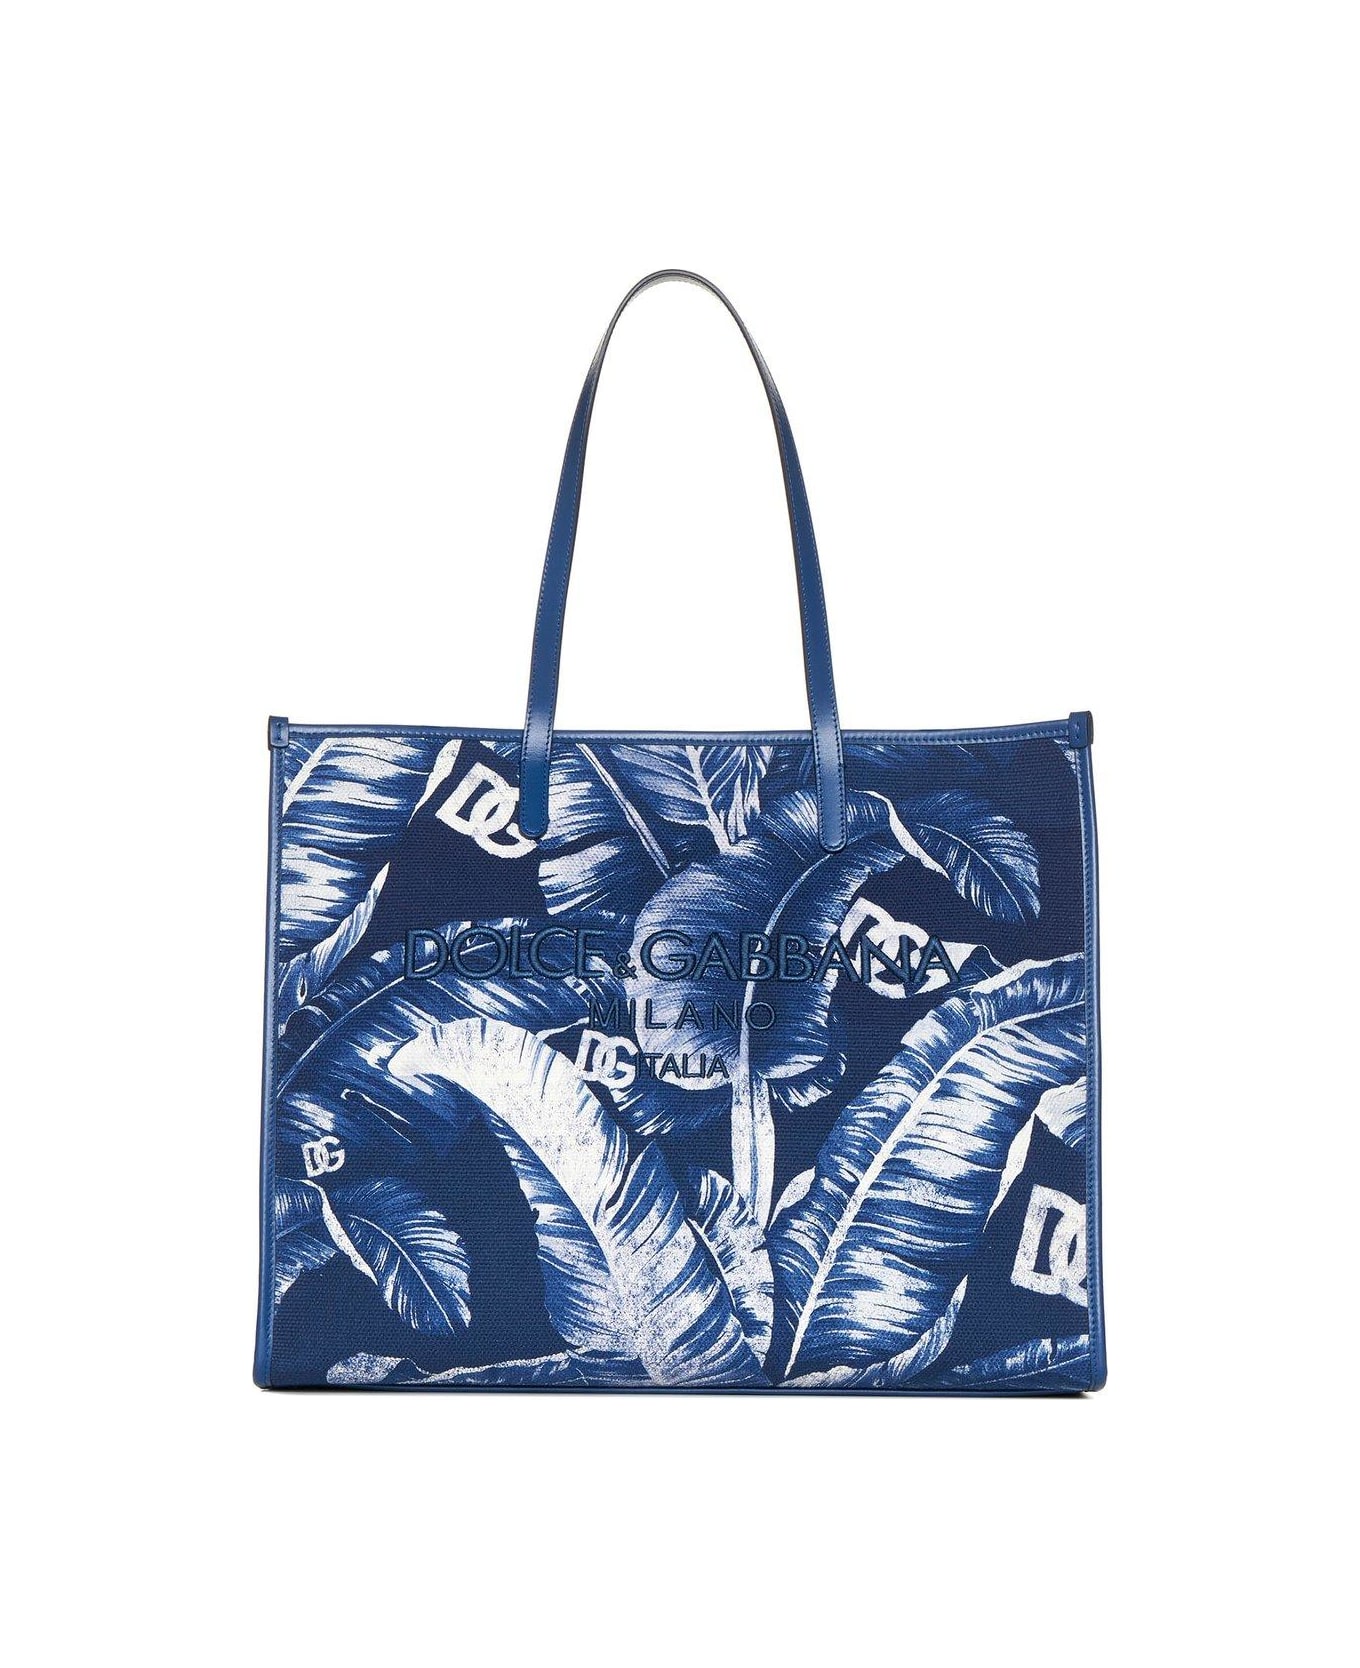 Dolce & Gabbana Leaf Printed Shoulder Bag - BLUE